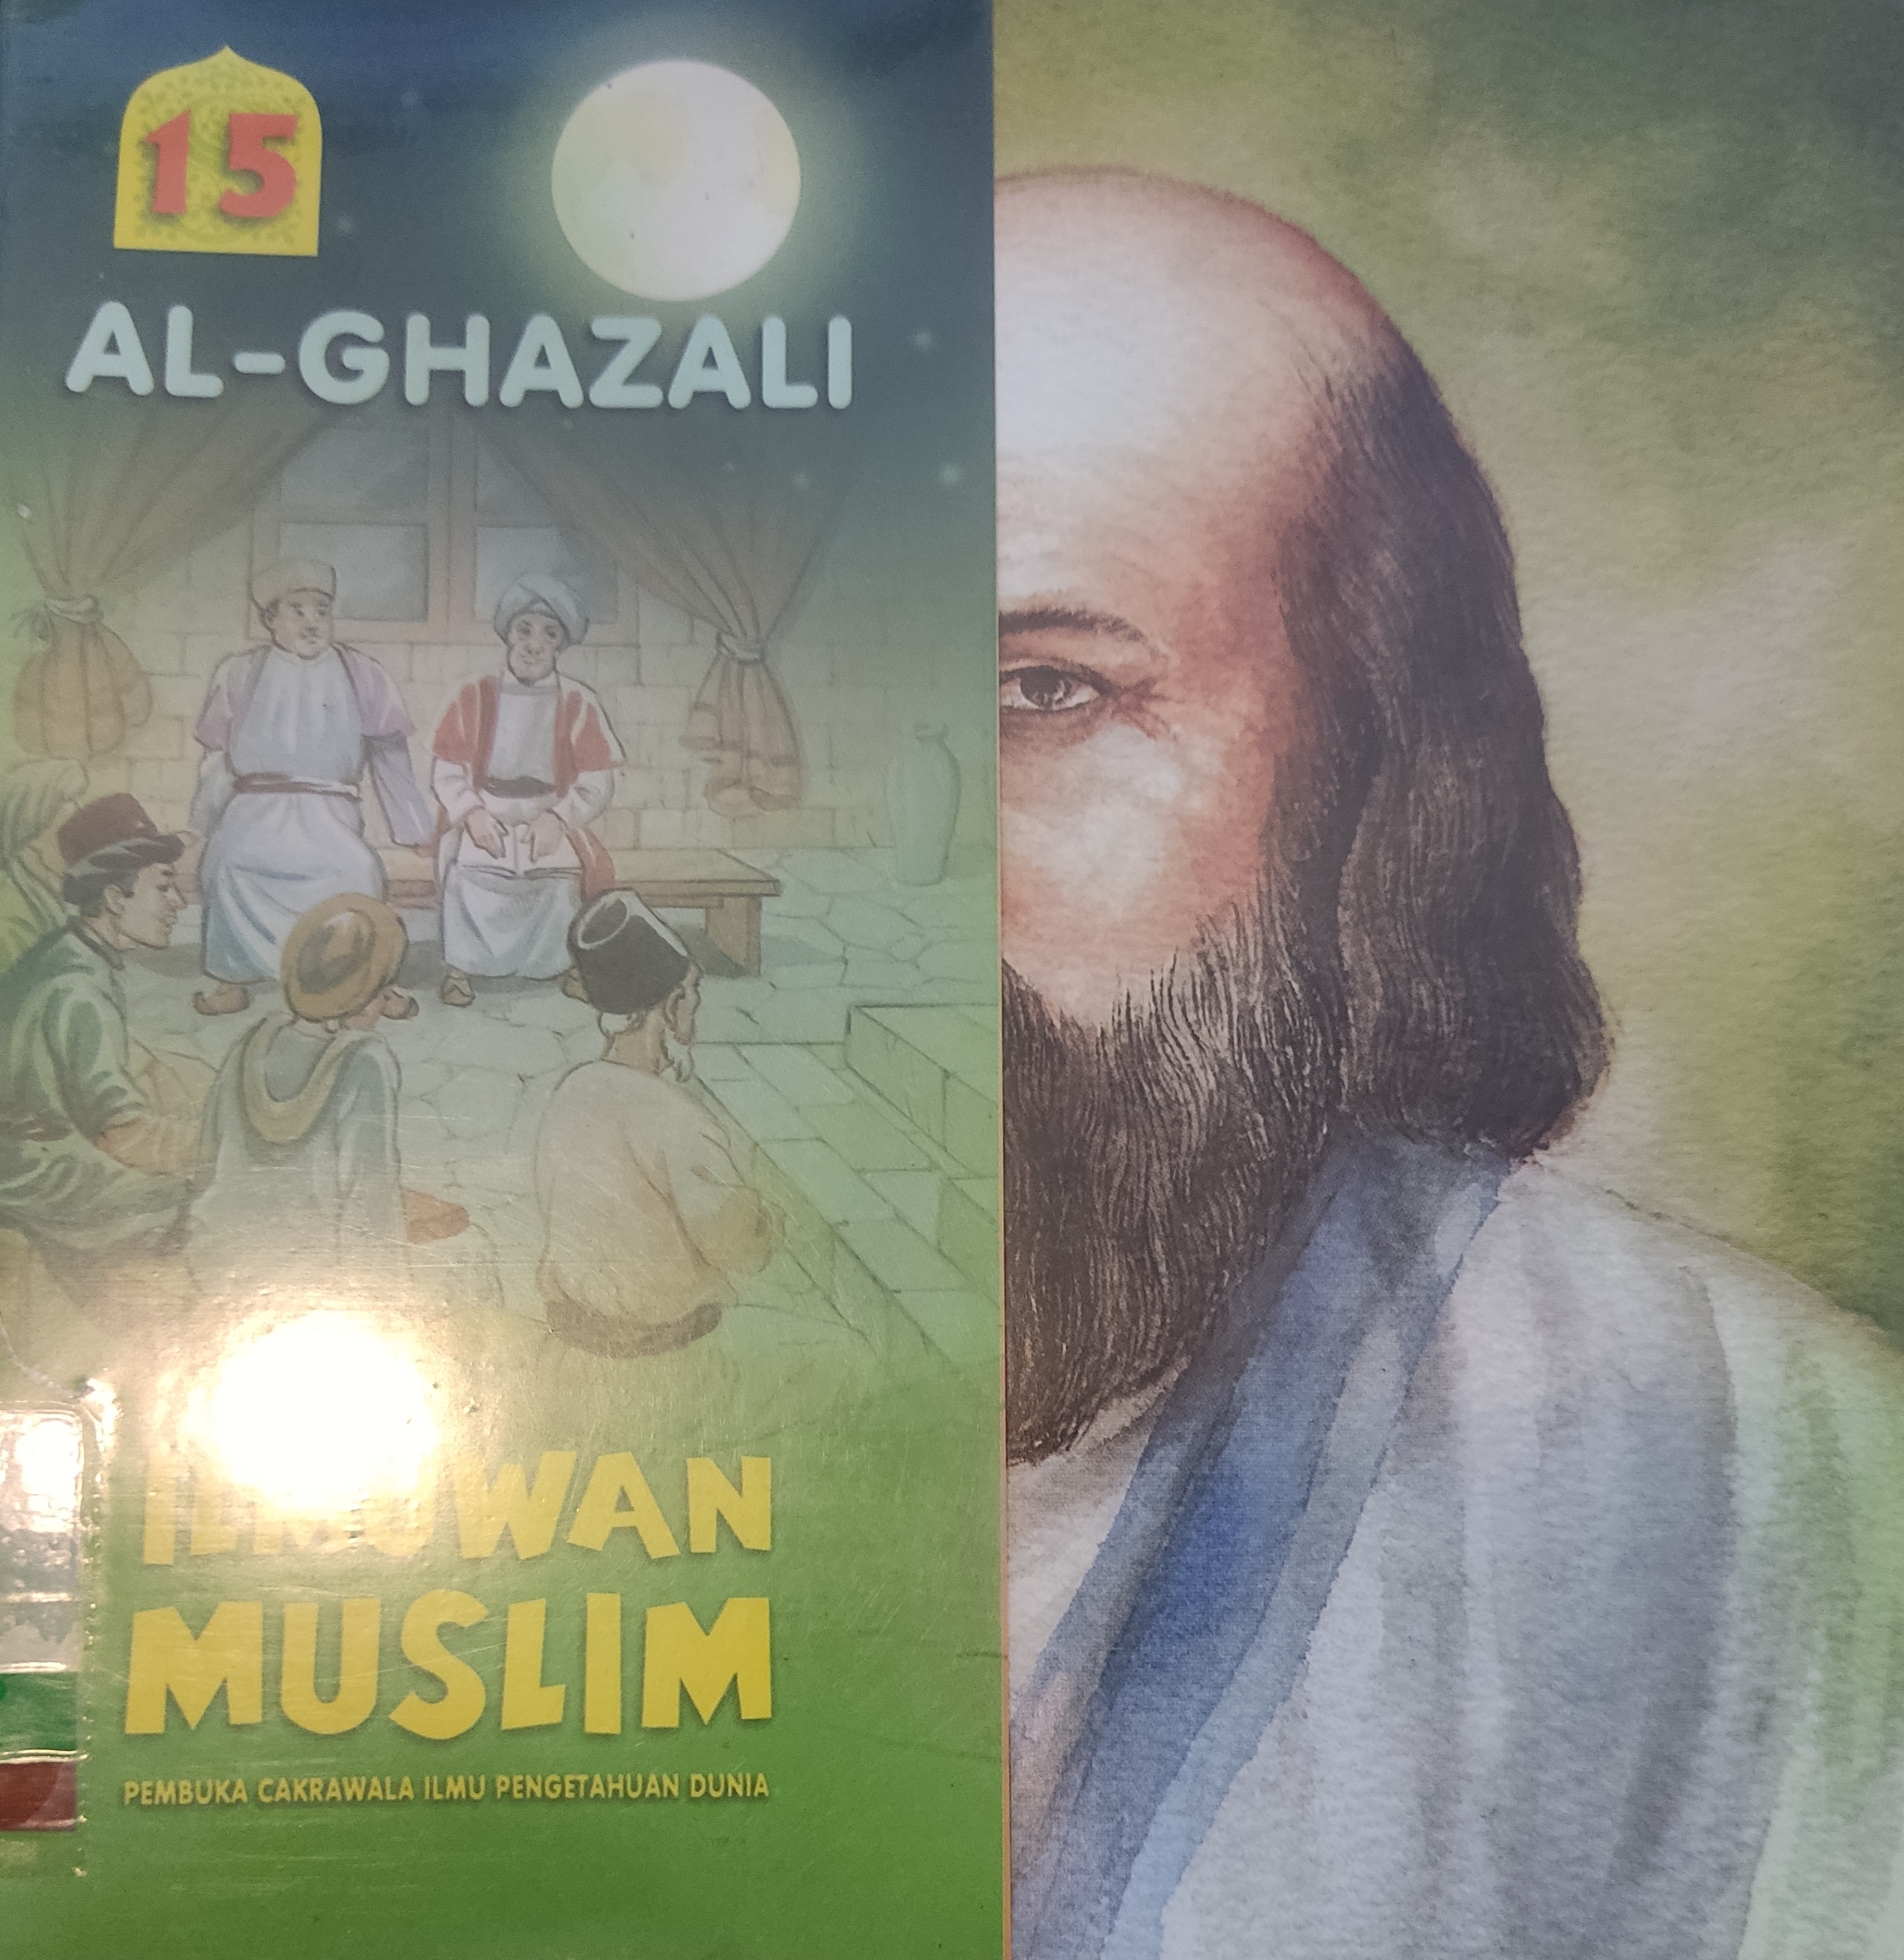 Ilmuwan Muslim, :  Pembuka Cakrawala Ilmu Pengetahuan Dunia Jilid 15 Al-Ghazali